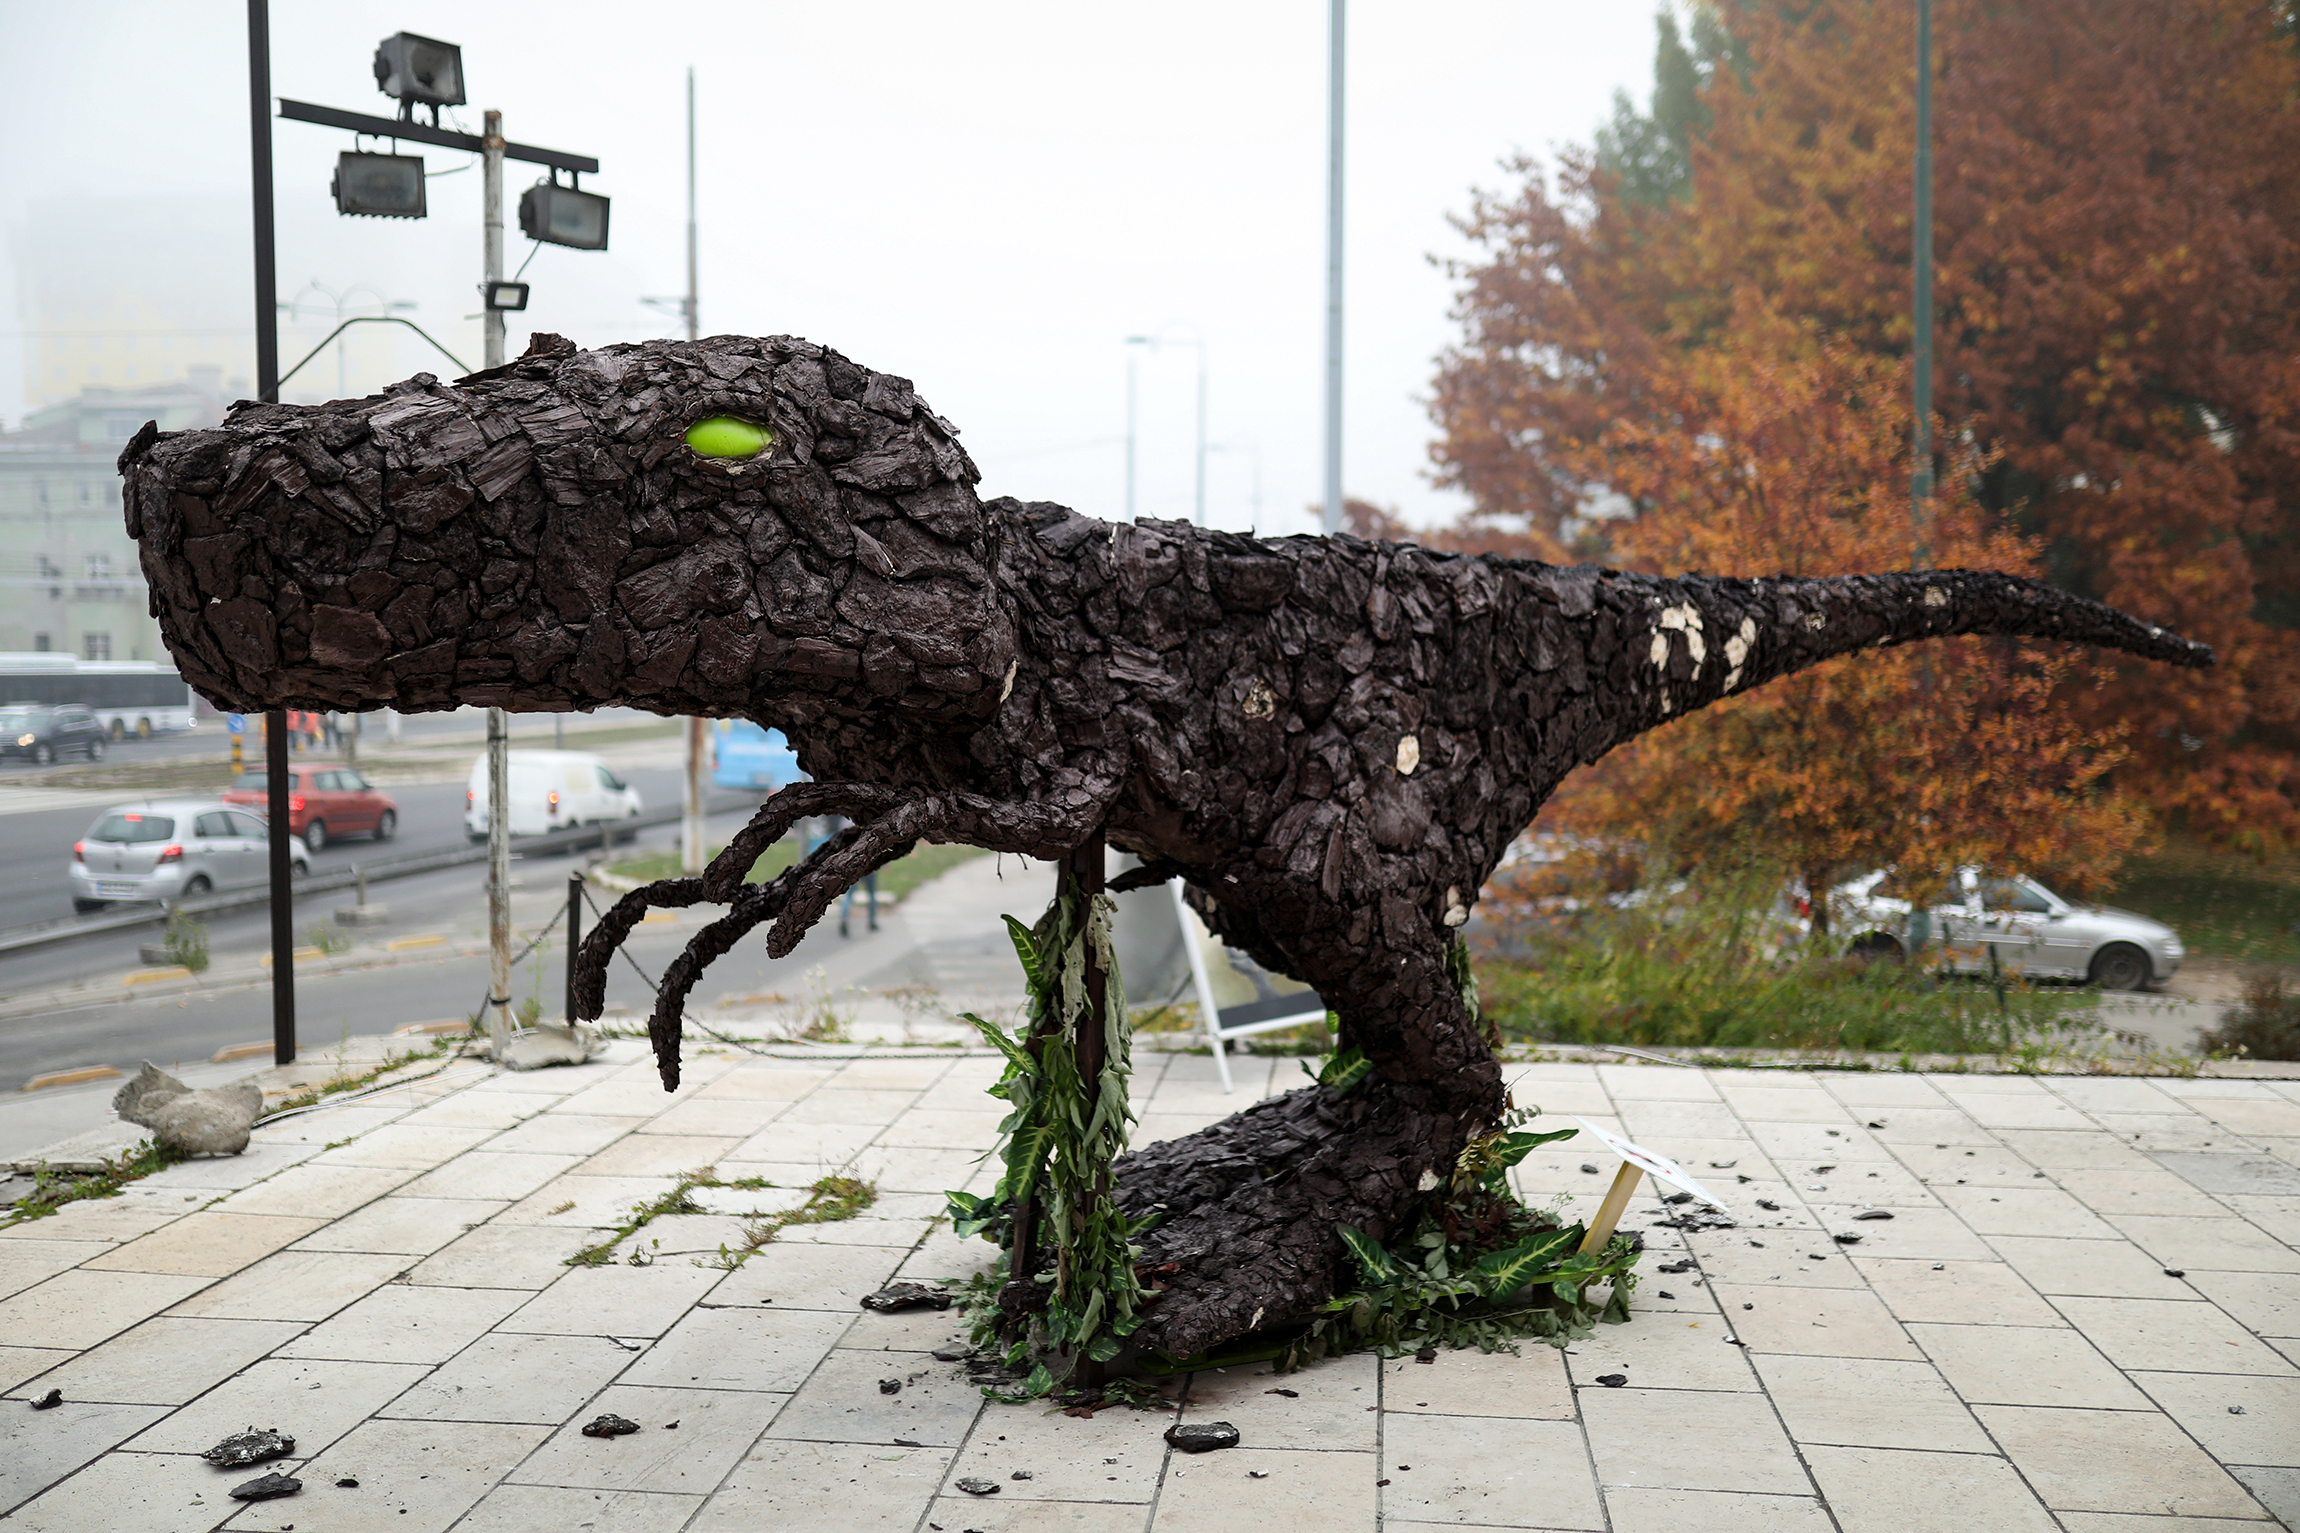 29 октября, Сараево (Босния и Герцеговина). Художники установили фигуру тираннозавра, покрытую углем, для привлечения внимания к кампании ООН &laquo;Не выбирайте вымирание&raquo;, посвященной проблеме изменения климата